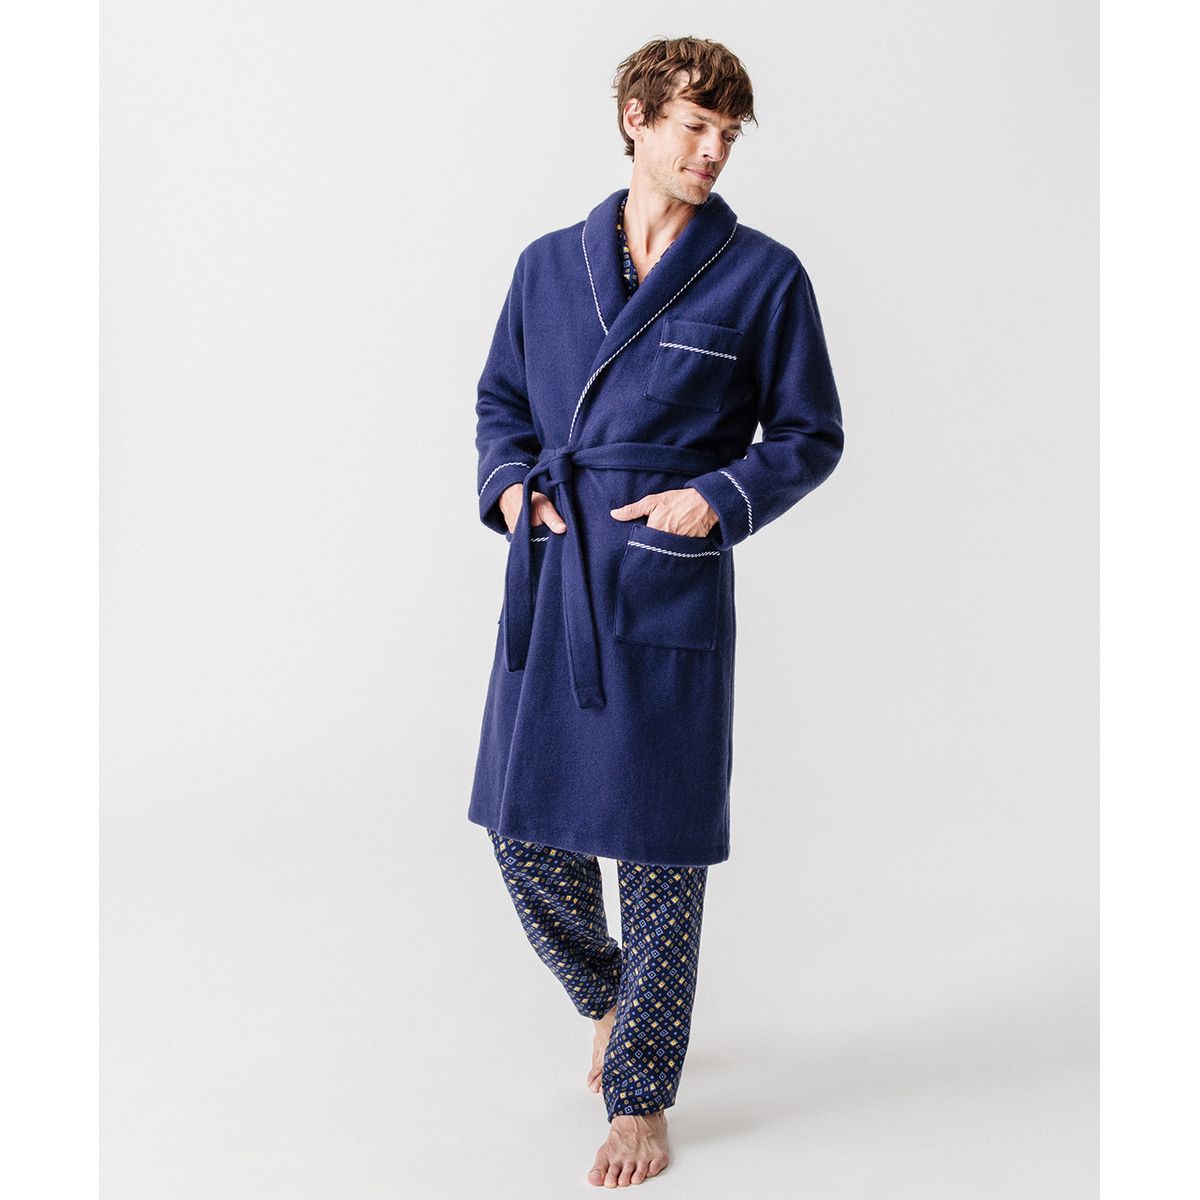 Robe de Chambre Antibes Polaire Hom pour homme en coloris Bleu Homme Vêtements Vêtements de nuit 